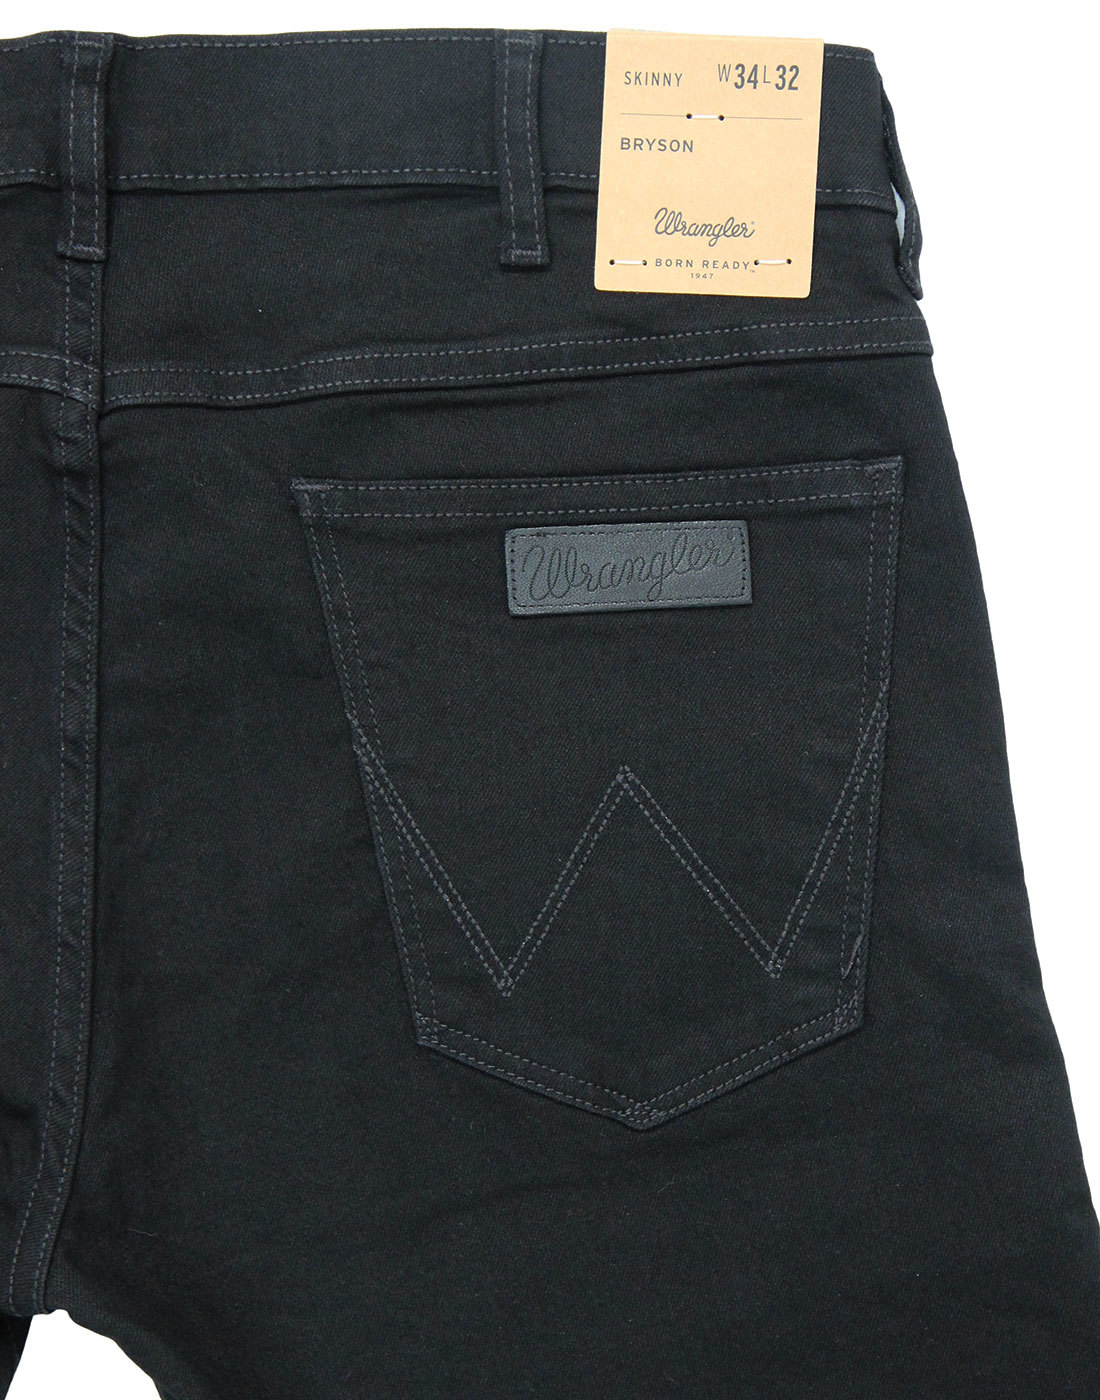 WRANGLER Bryson Men's Retro Mod Skinny Denim Jeans in Black